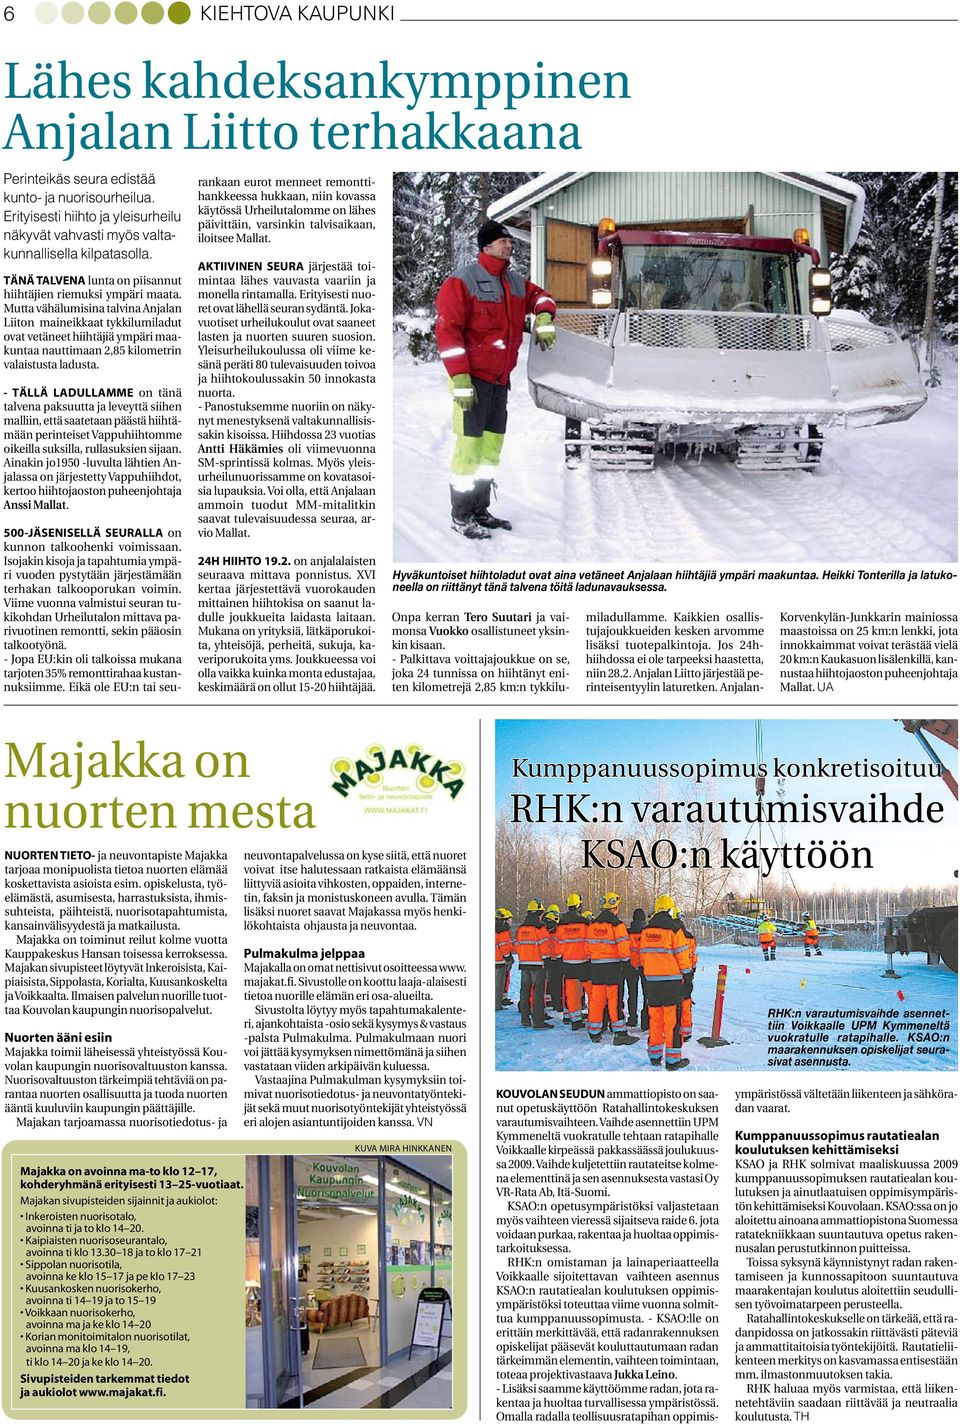 Mutta vähälumisina talvina Anjalan Liiton maineikkaat tykkilumiladut ovat vetäneet hiihtäjiä ympäri maakuntaa nauttimaan 2,85 kilometrin valaistusta ladusta.